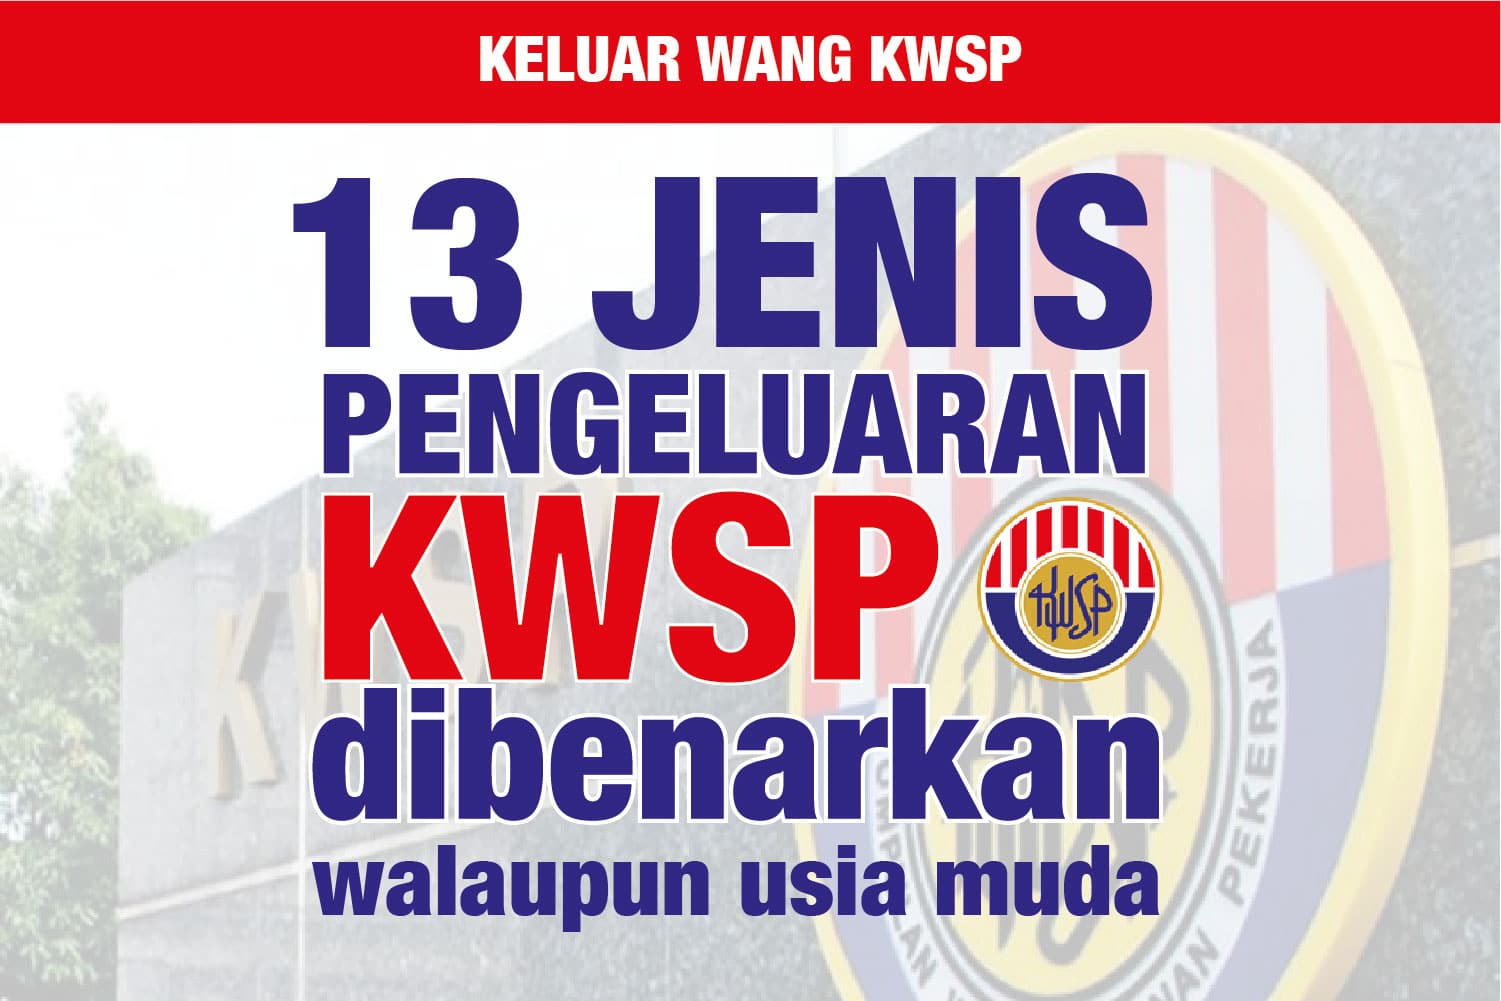 13 jenis pengeluaran KWSP dibenarkan, walaupun usia masih muda